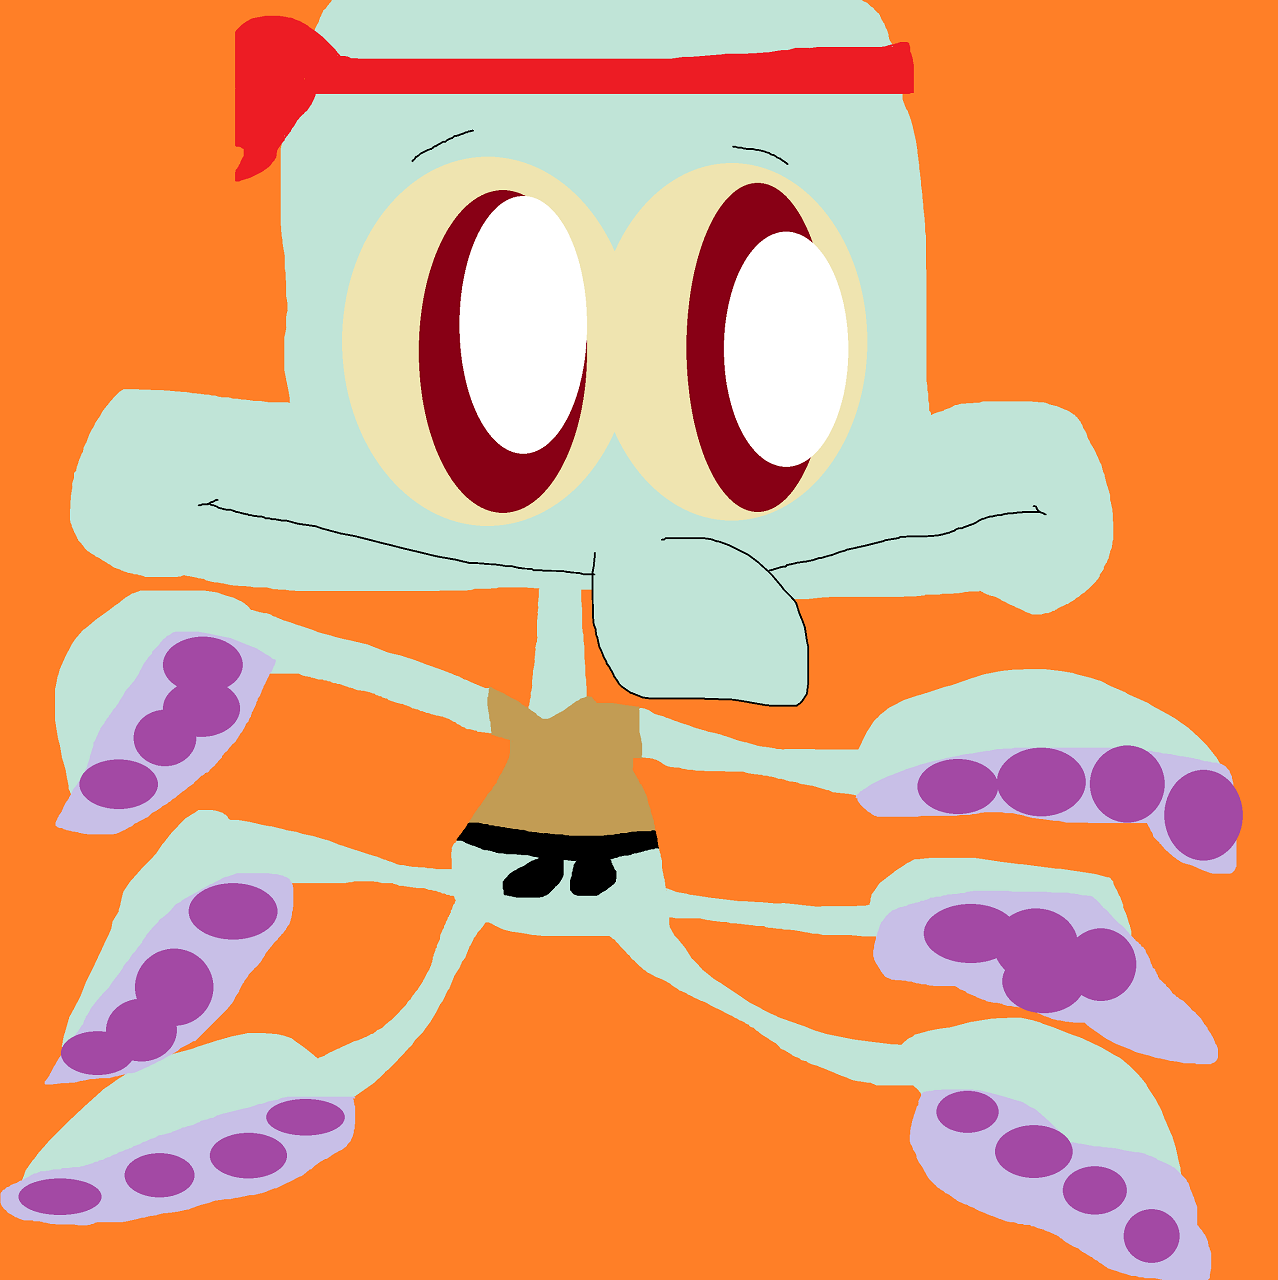 The Karate Octopus Again by Falconlobo